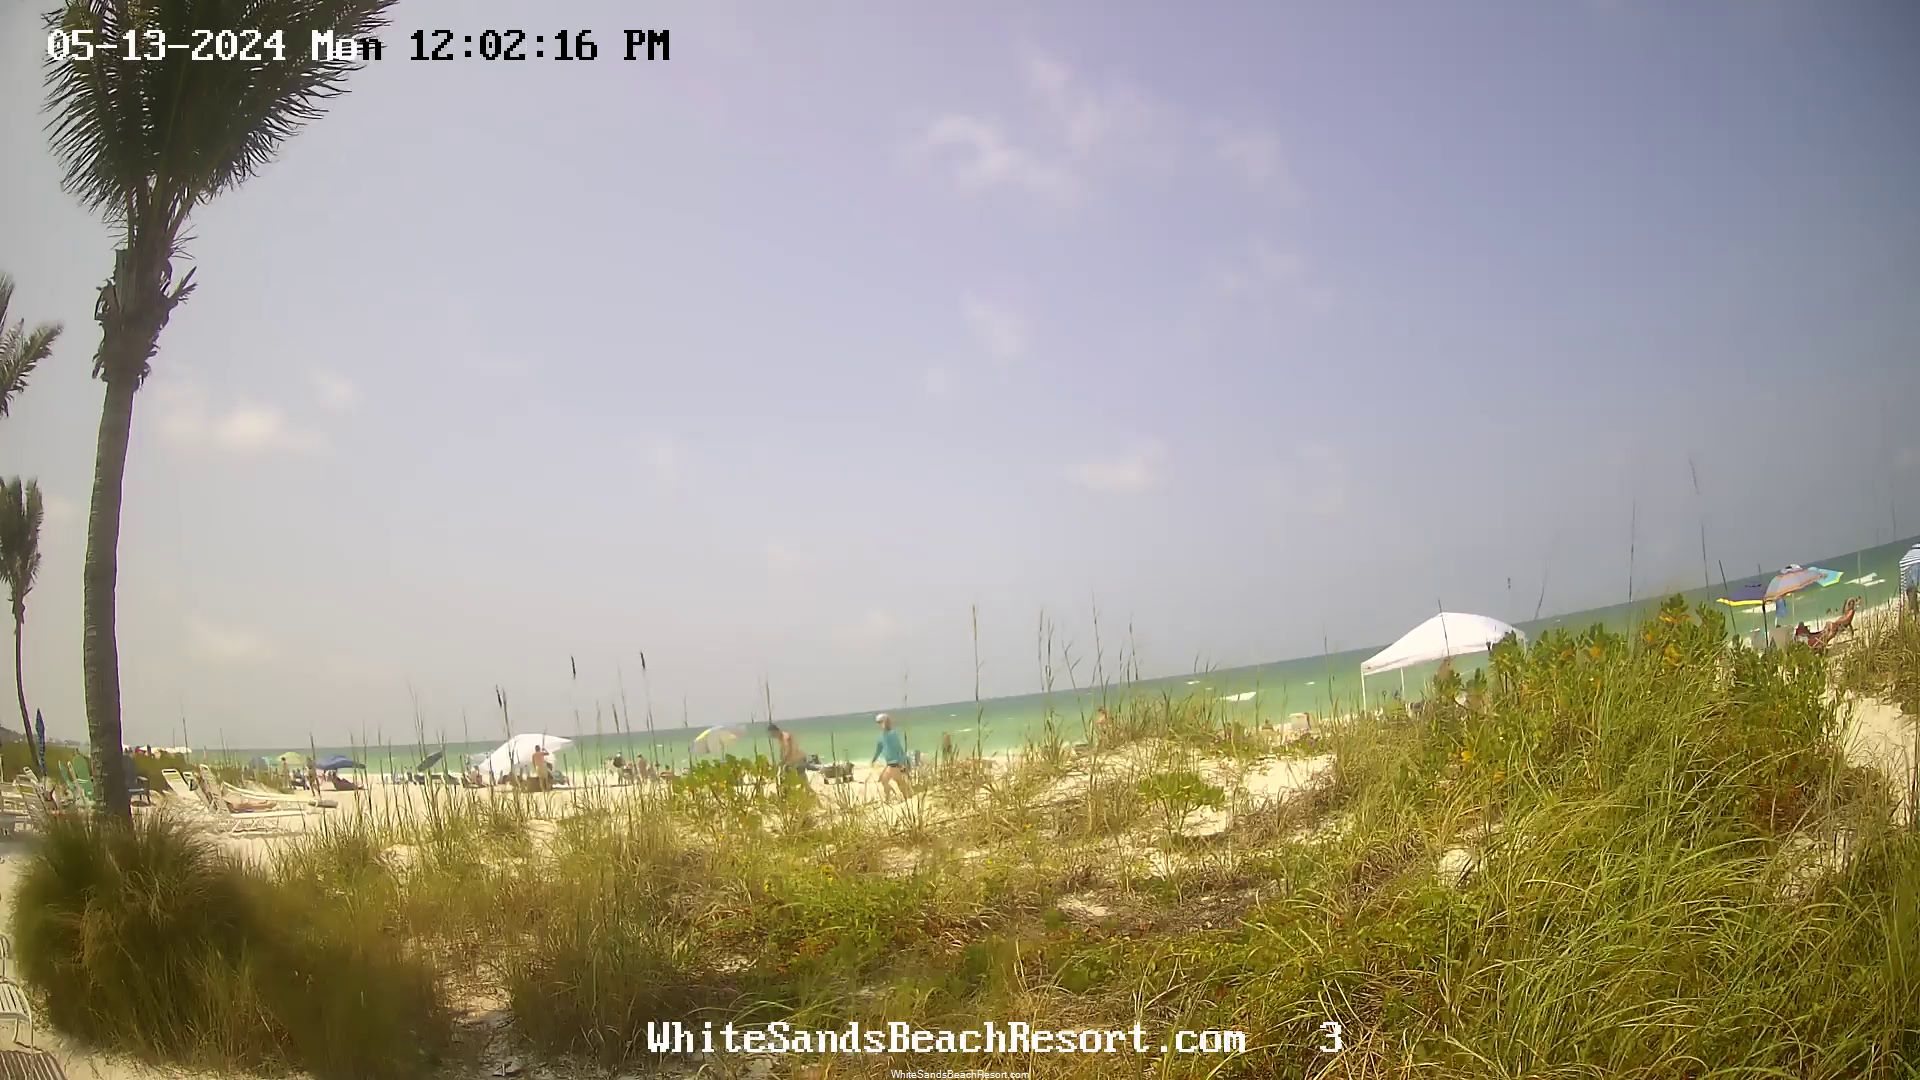 Holmes Beach, Florida Vie. 11:56